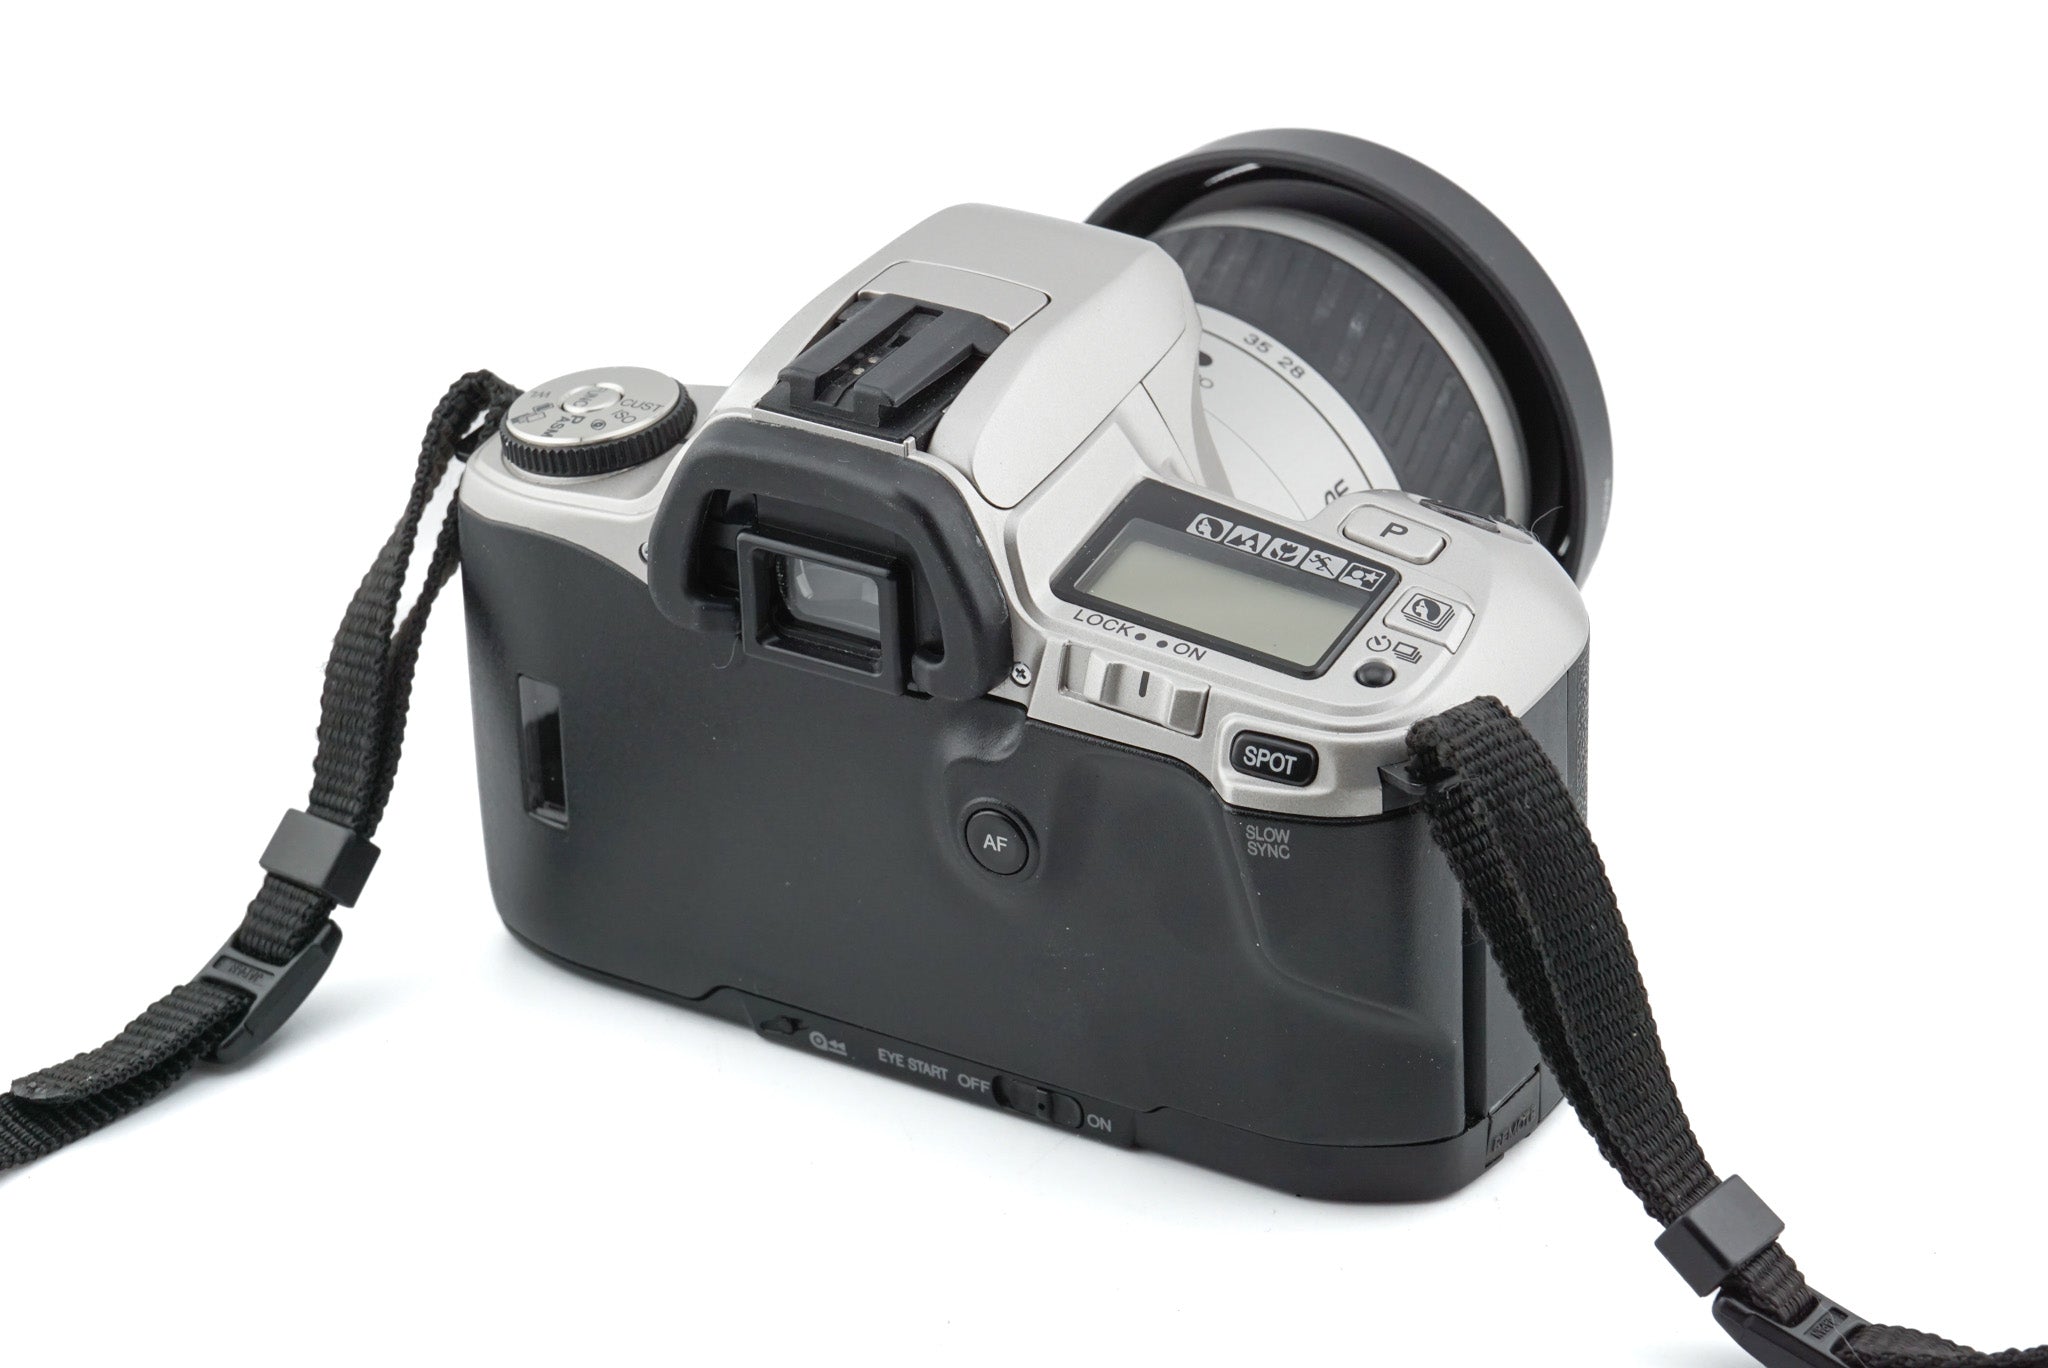 Minolta Dynax 505si + 28-80mm f3.5-5.6 AF Zoom Macro